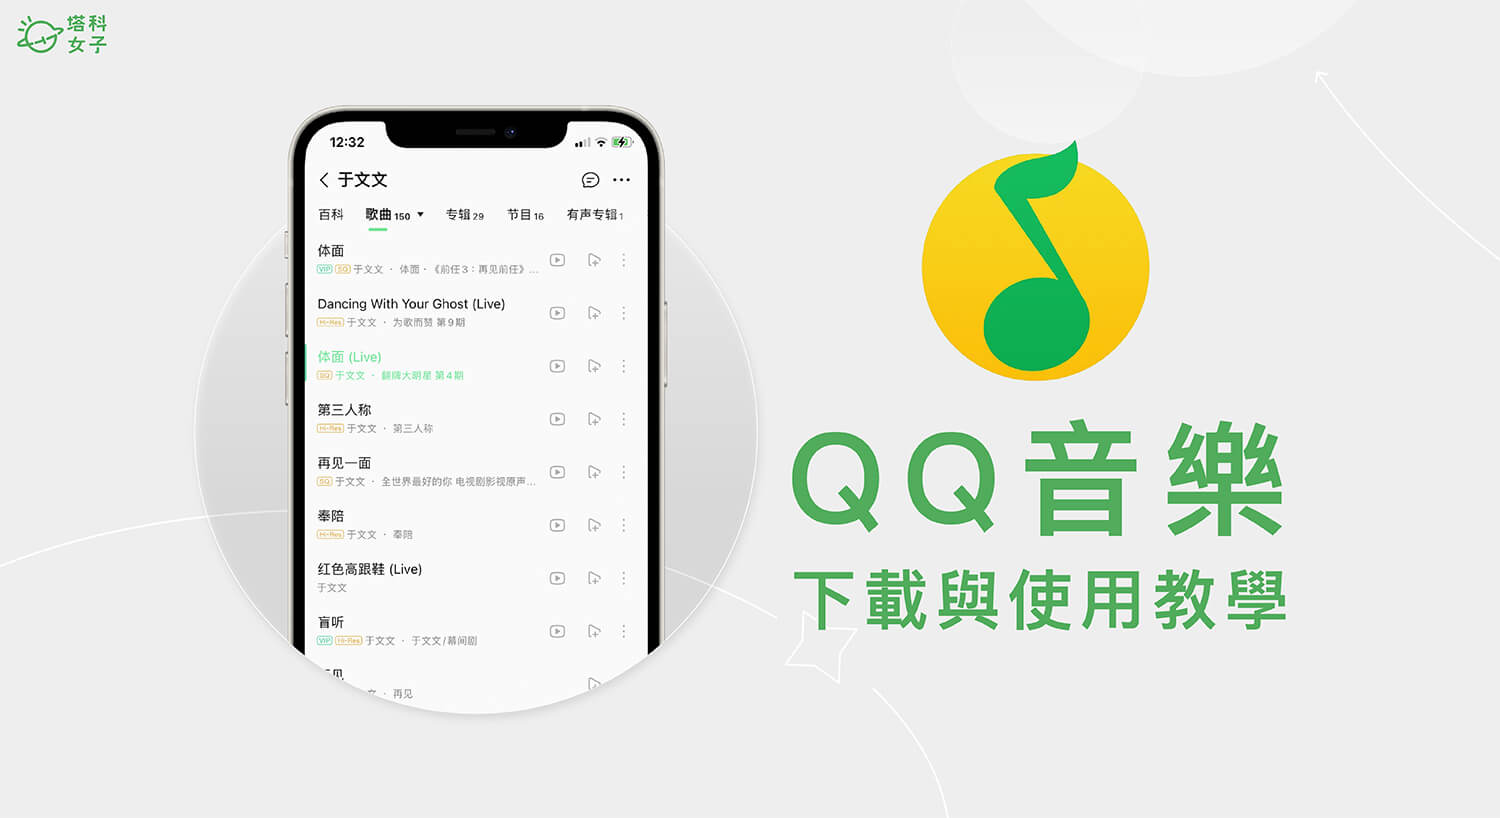 QQ 音樂怎麼用？QQ 音樂台灣下載 、沒有音源、破解版權地區限制